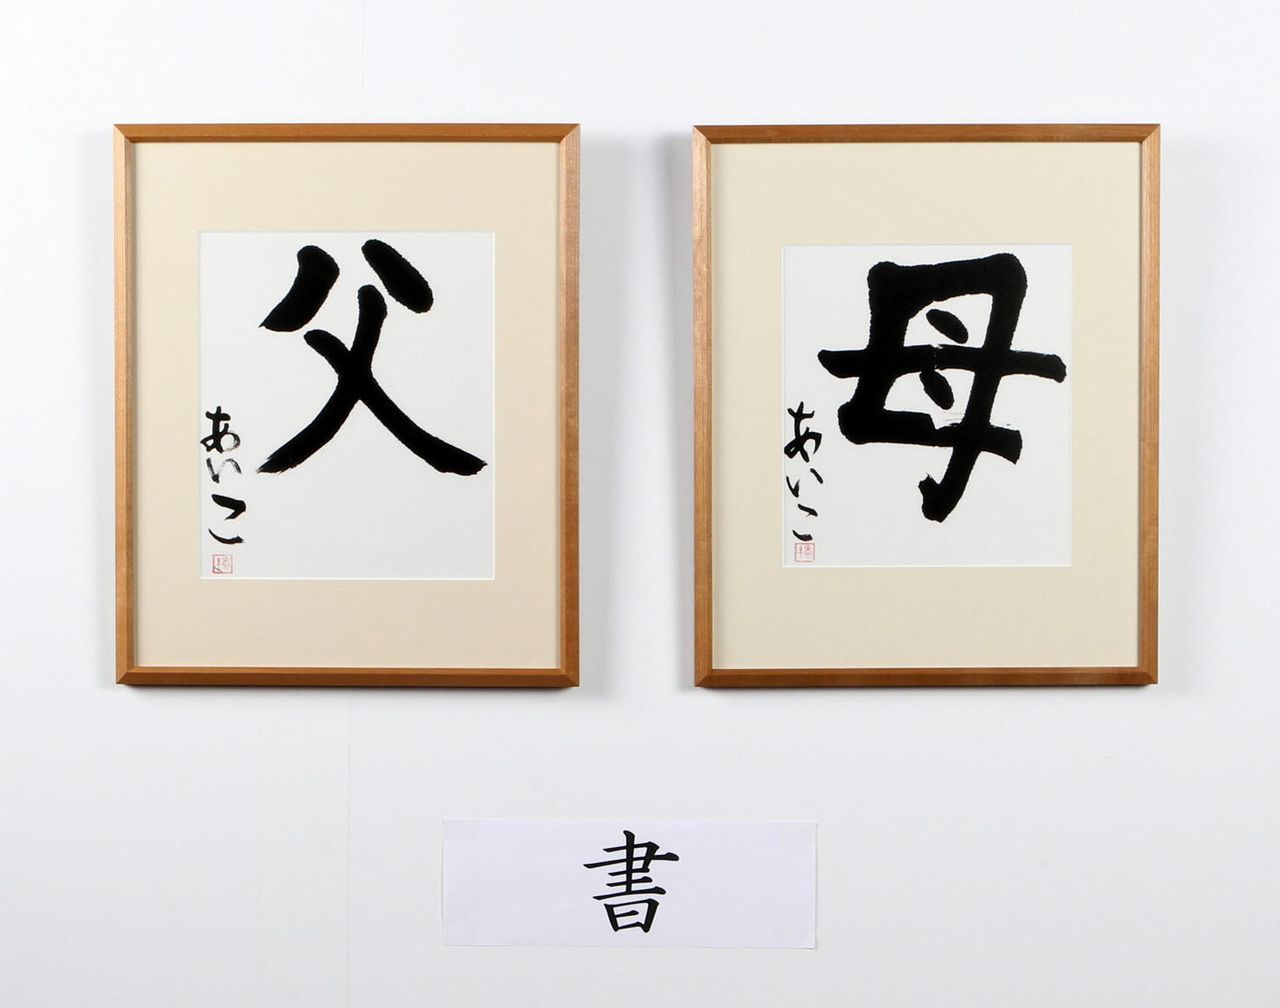 Caligrafías de la princesa Aiko con los kanji de “padre” (izquierda) y “madre” en el Festival de cultura y arte del personal de la Agencia de la Casa Imperial en diciembre de 2012. (Por cortesía de la Agencia de la Casa Imperial. © Jiji)